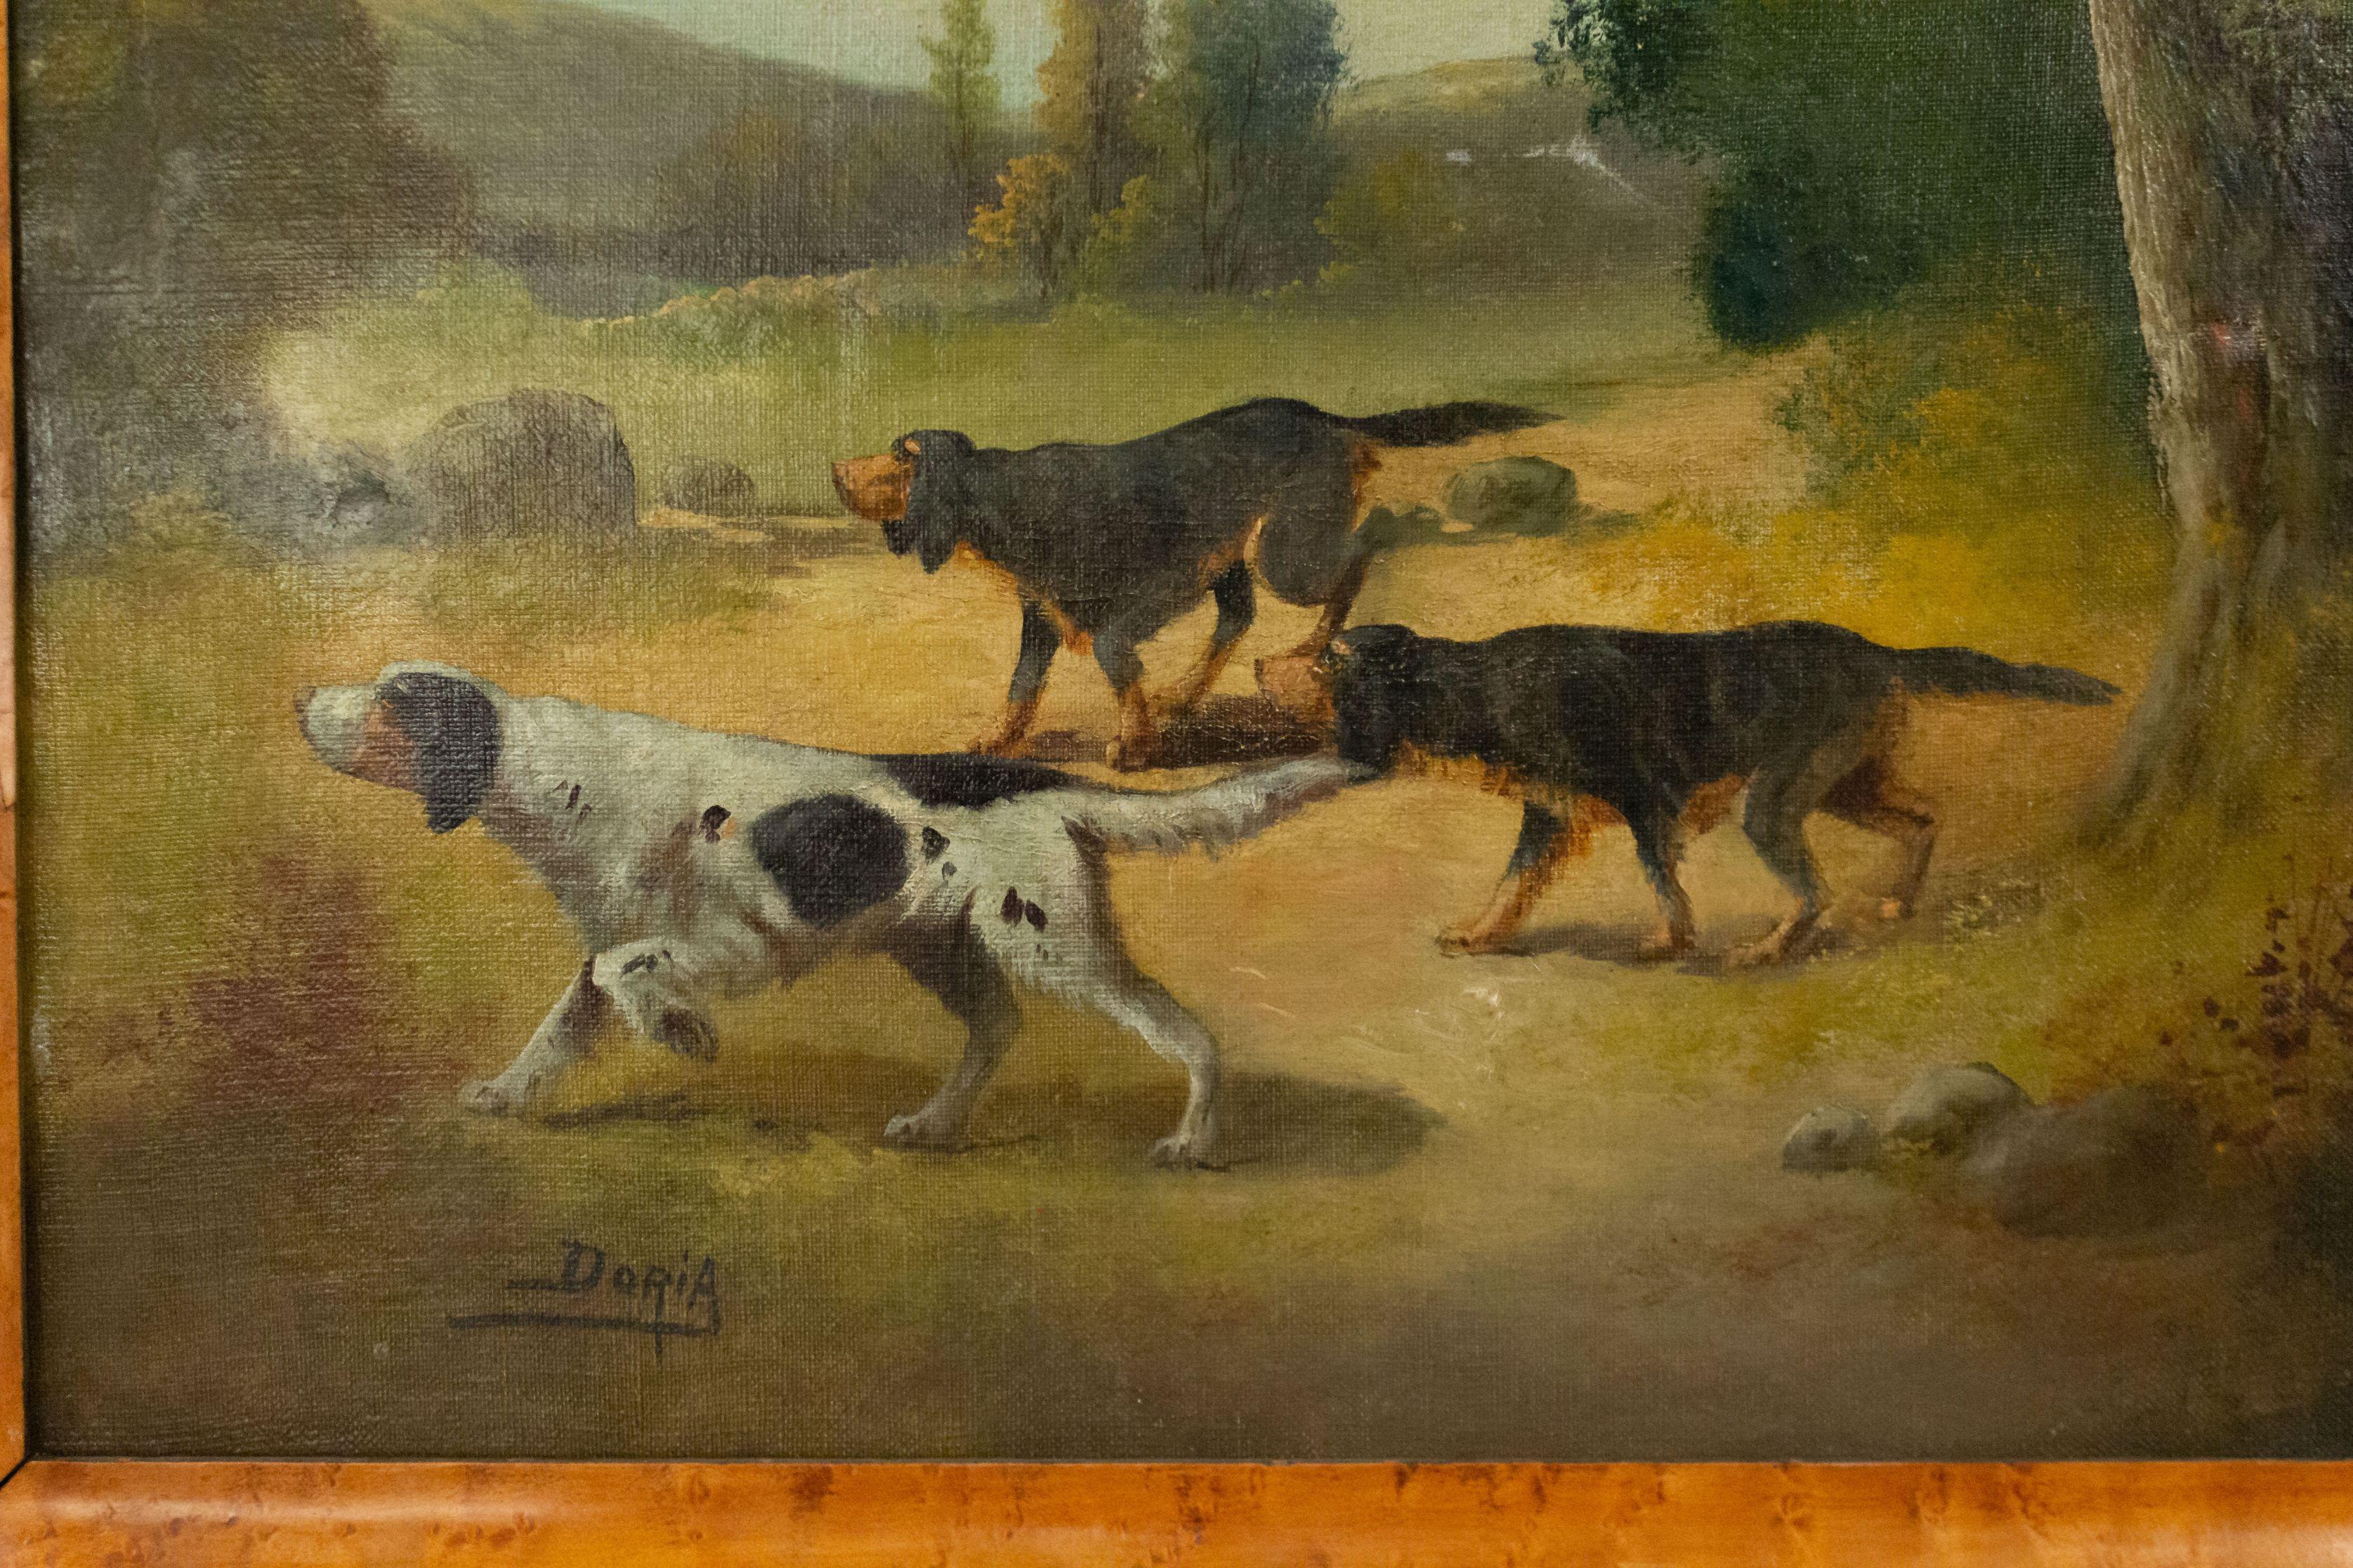 Peinture à l'huile en érable encadrée de 3 chiens de chasse (pointers) de style victorien anglais (signée DORIA).
 